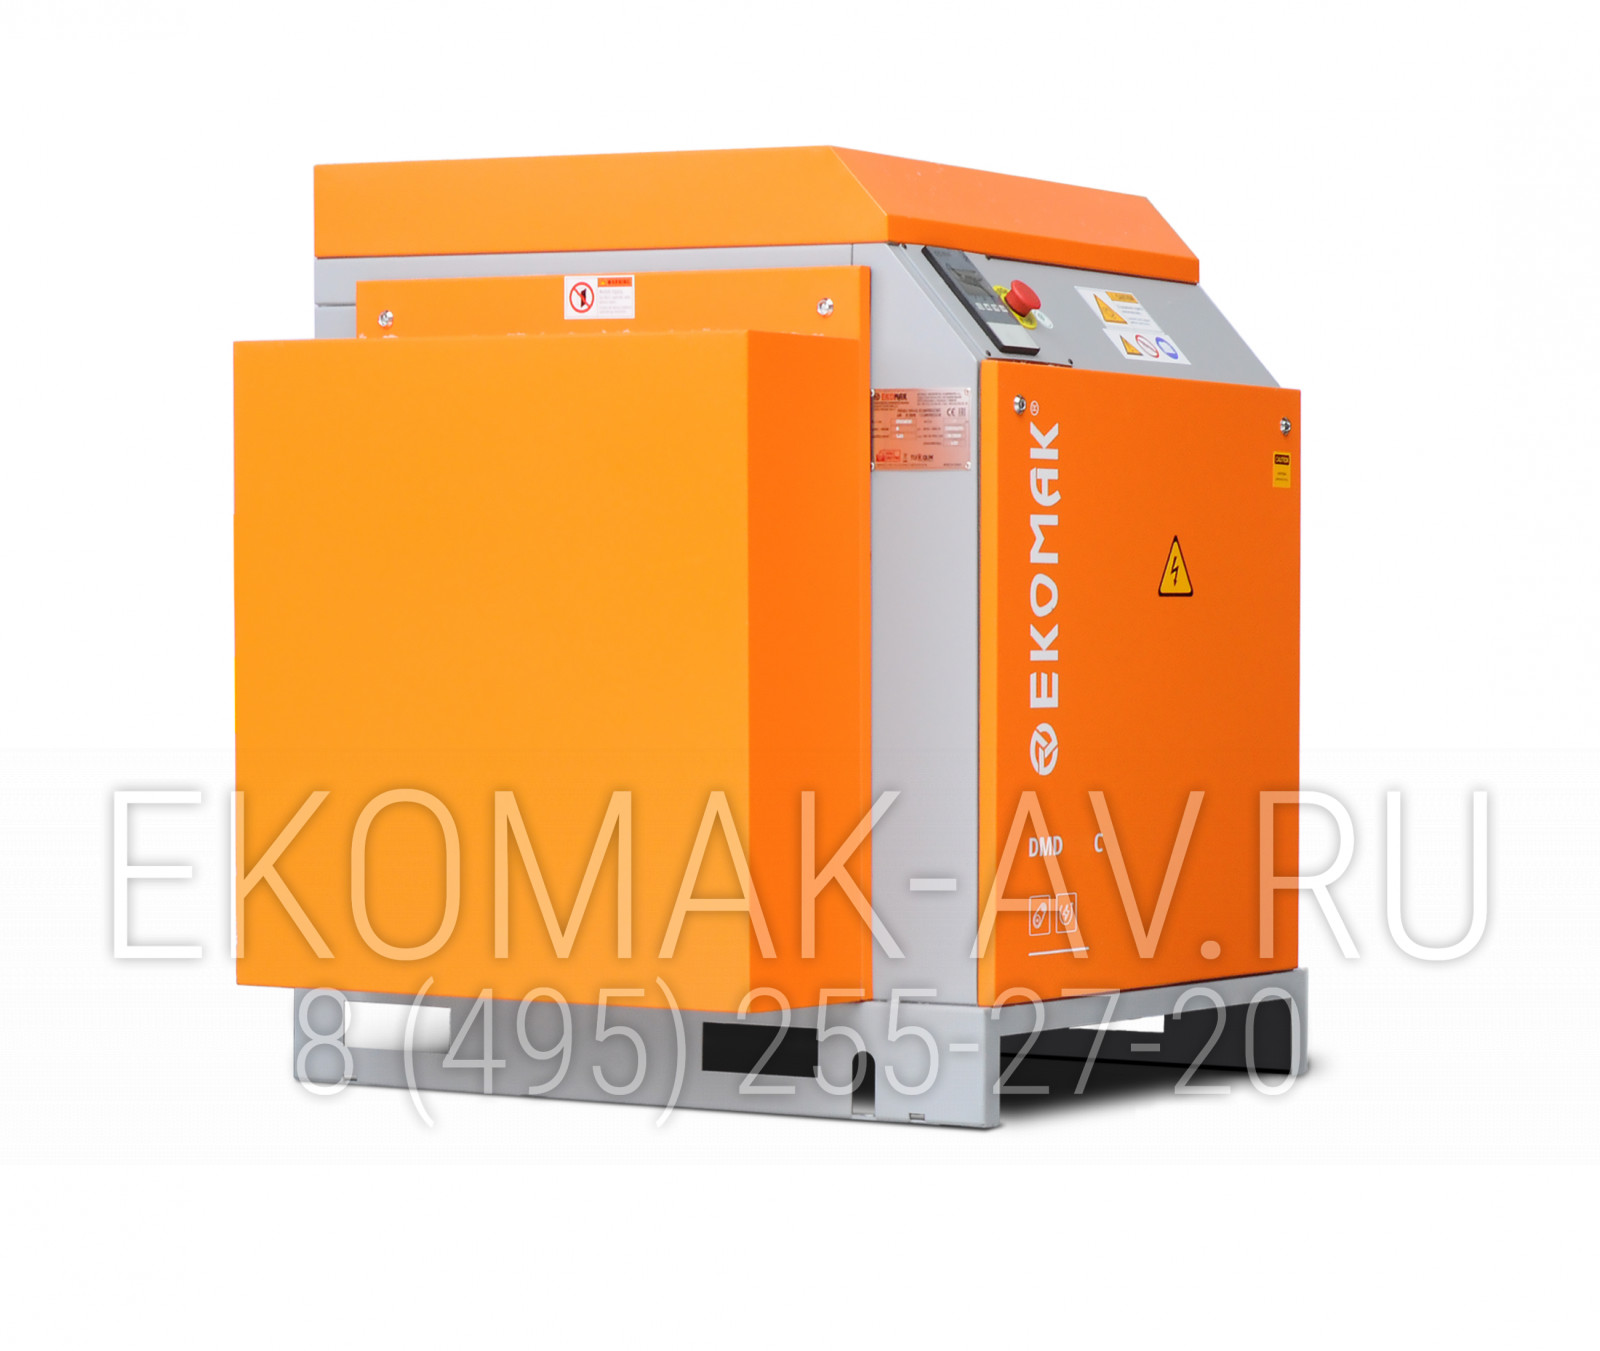 Винтовой компрессор Ekomak DMD 150 C 7